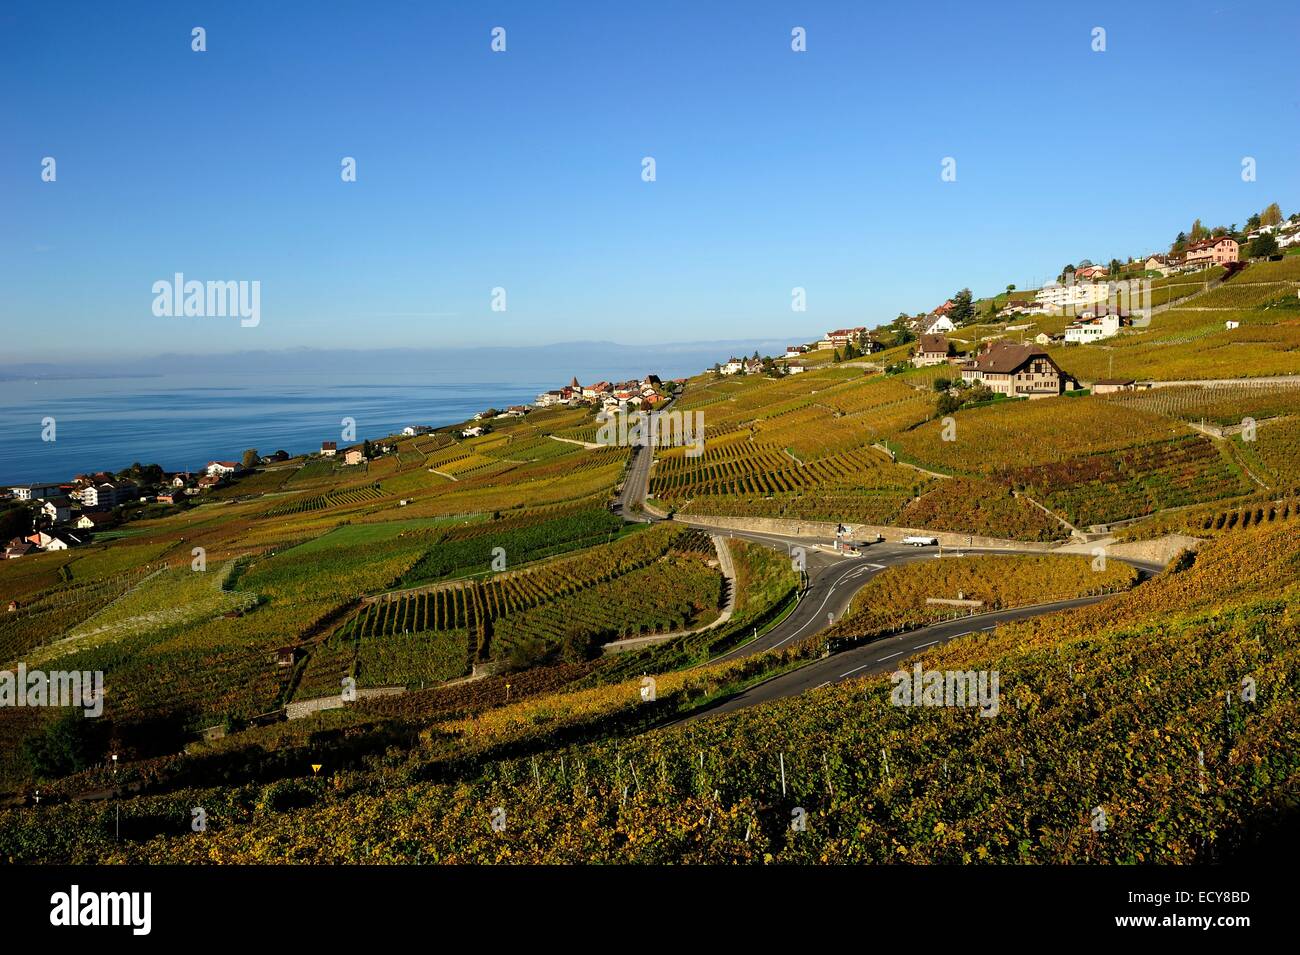 Les vignobles de Lavaux sur le lac de Genève, Canton de Vaud, Suisse Banque D'Images